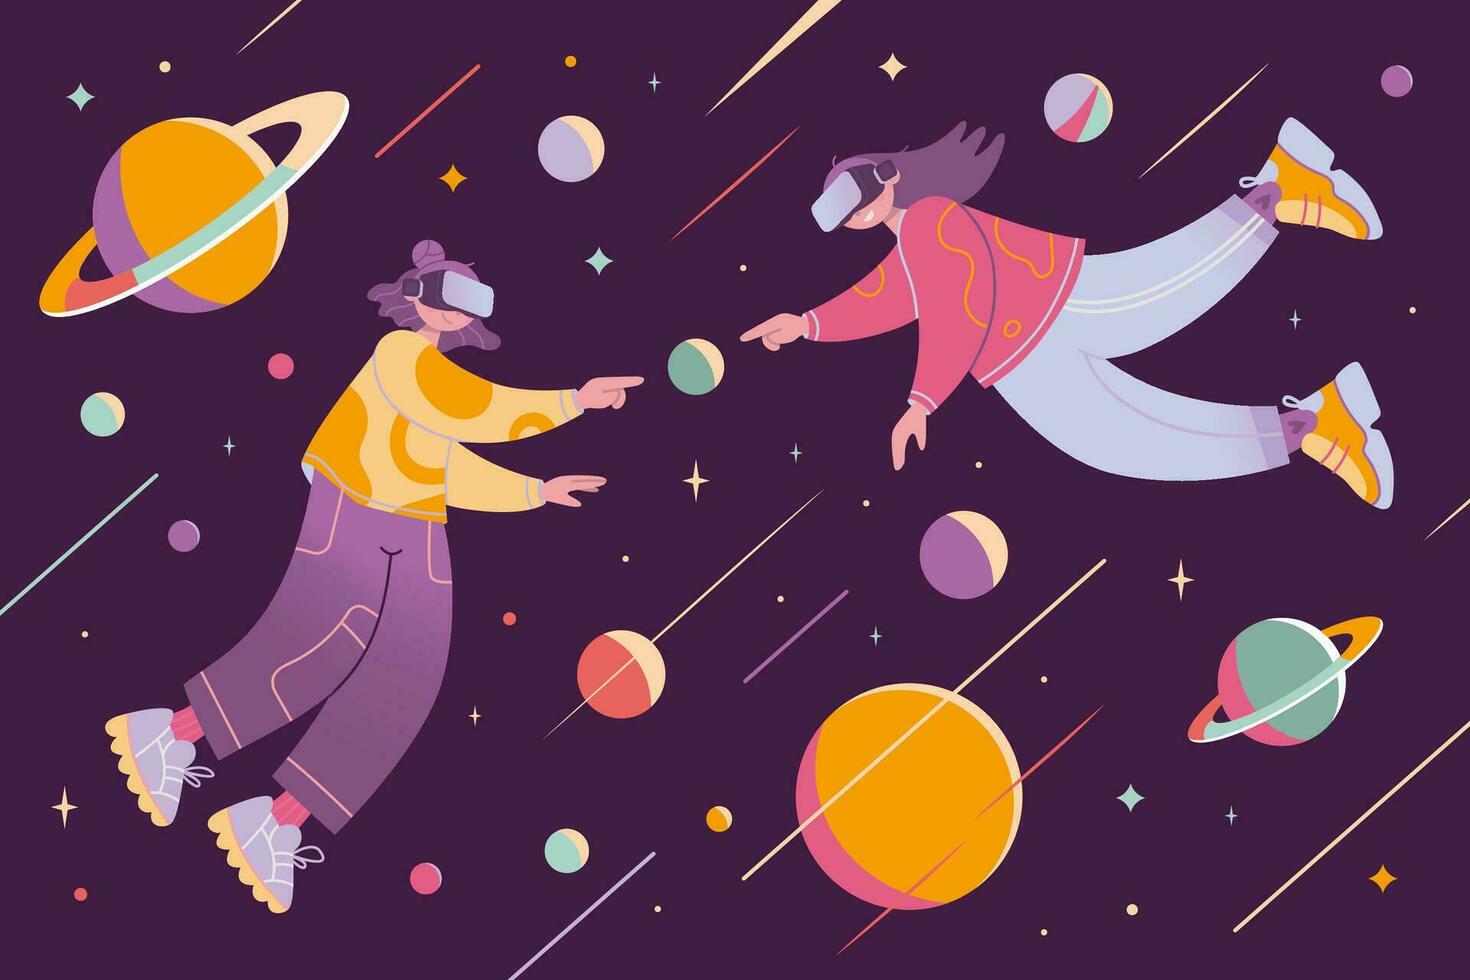 Metaverse oder virtuell Wirklichkeit Kommunikation Konzept, Karikatur Stil. zwei Mädchen im vr Brille treffen, fliegend im äußere Raum mit Planeten und Sterne. modisch Vektor Illustration, Hand gezeichnet, eben